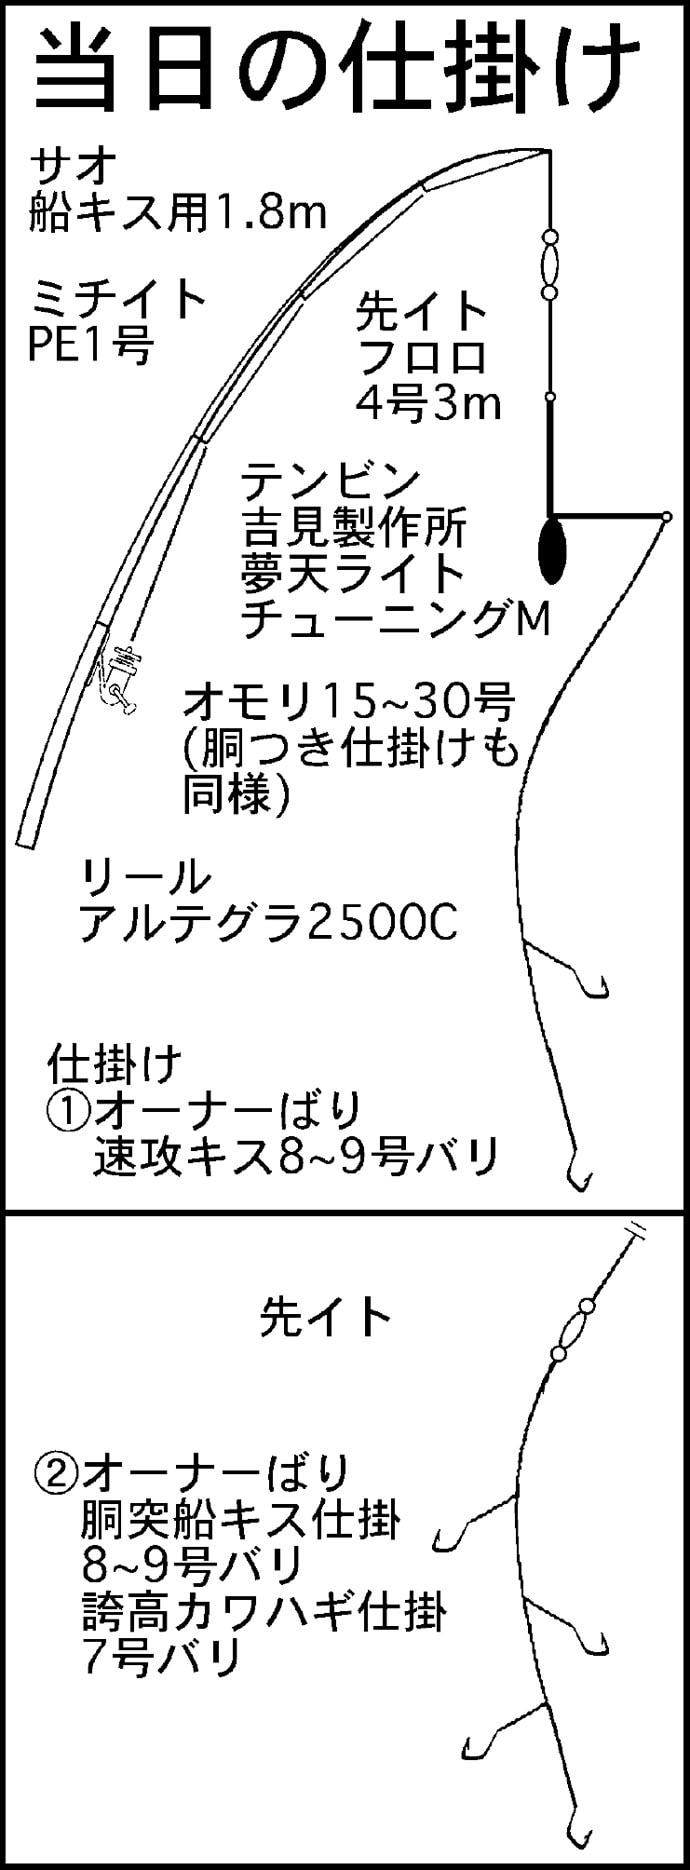 敦賀の海で夢の尺ギスを狙う 3人あわせて良型100尾超 福井県 Tsurinews